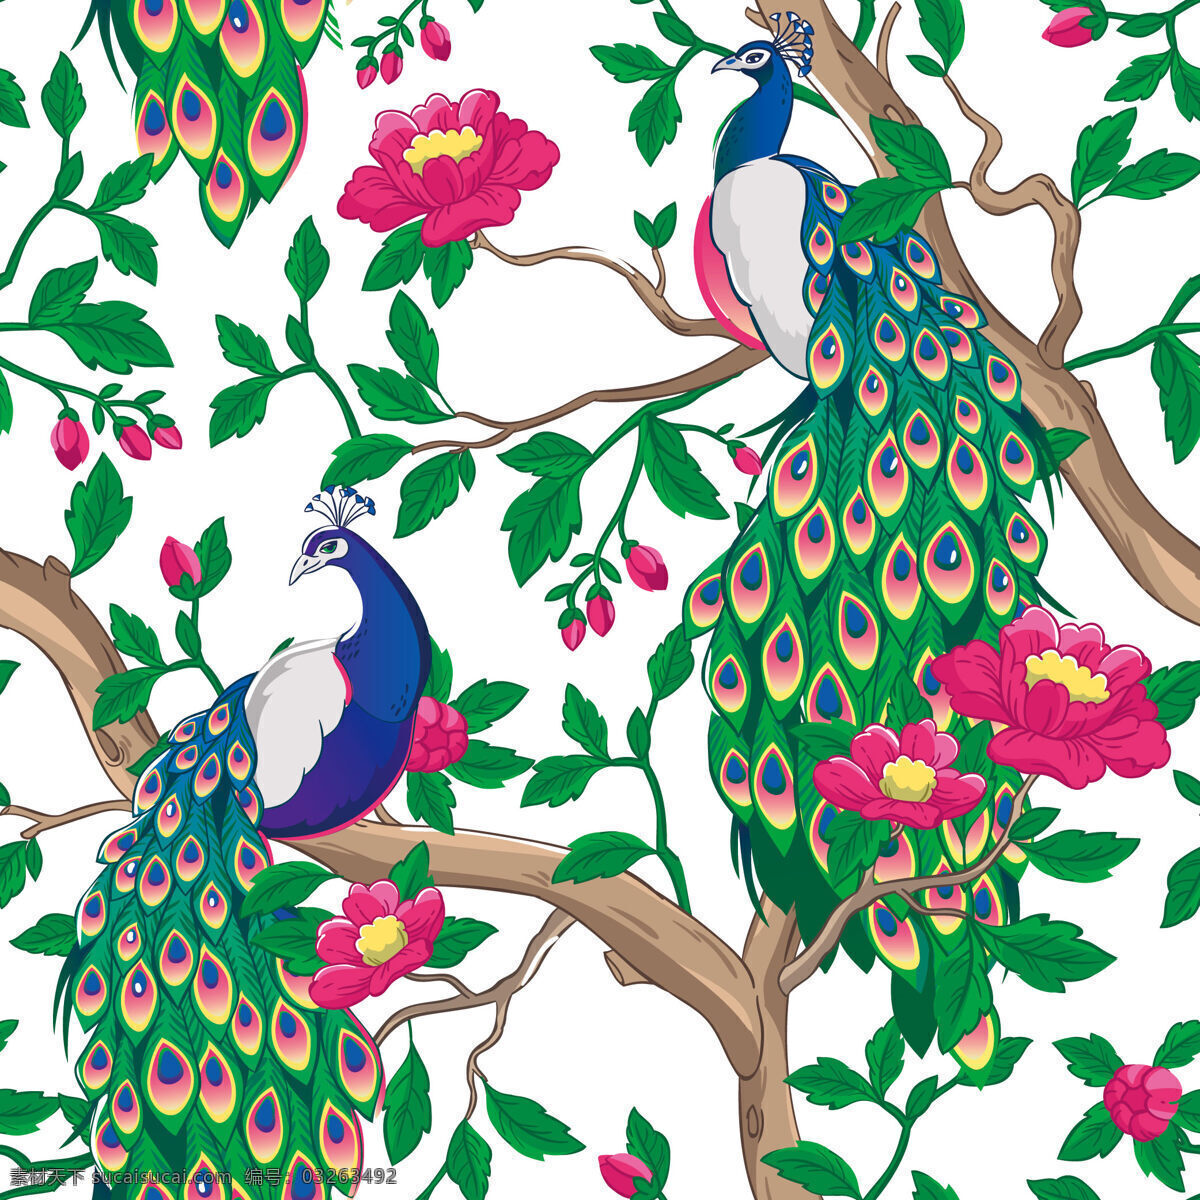 热带 风情 孔雀 壁纸 图案 装饰设计 树枝 孔雀图案 紫红色花朵 壁纸图案